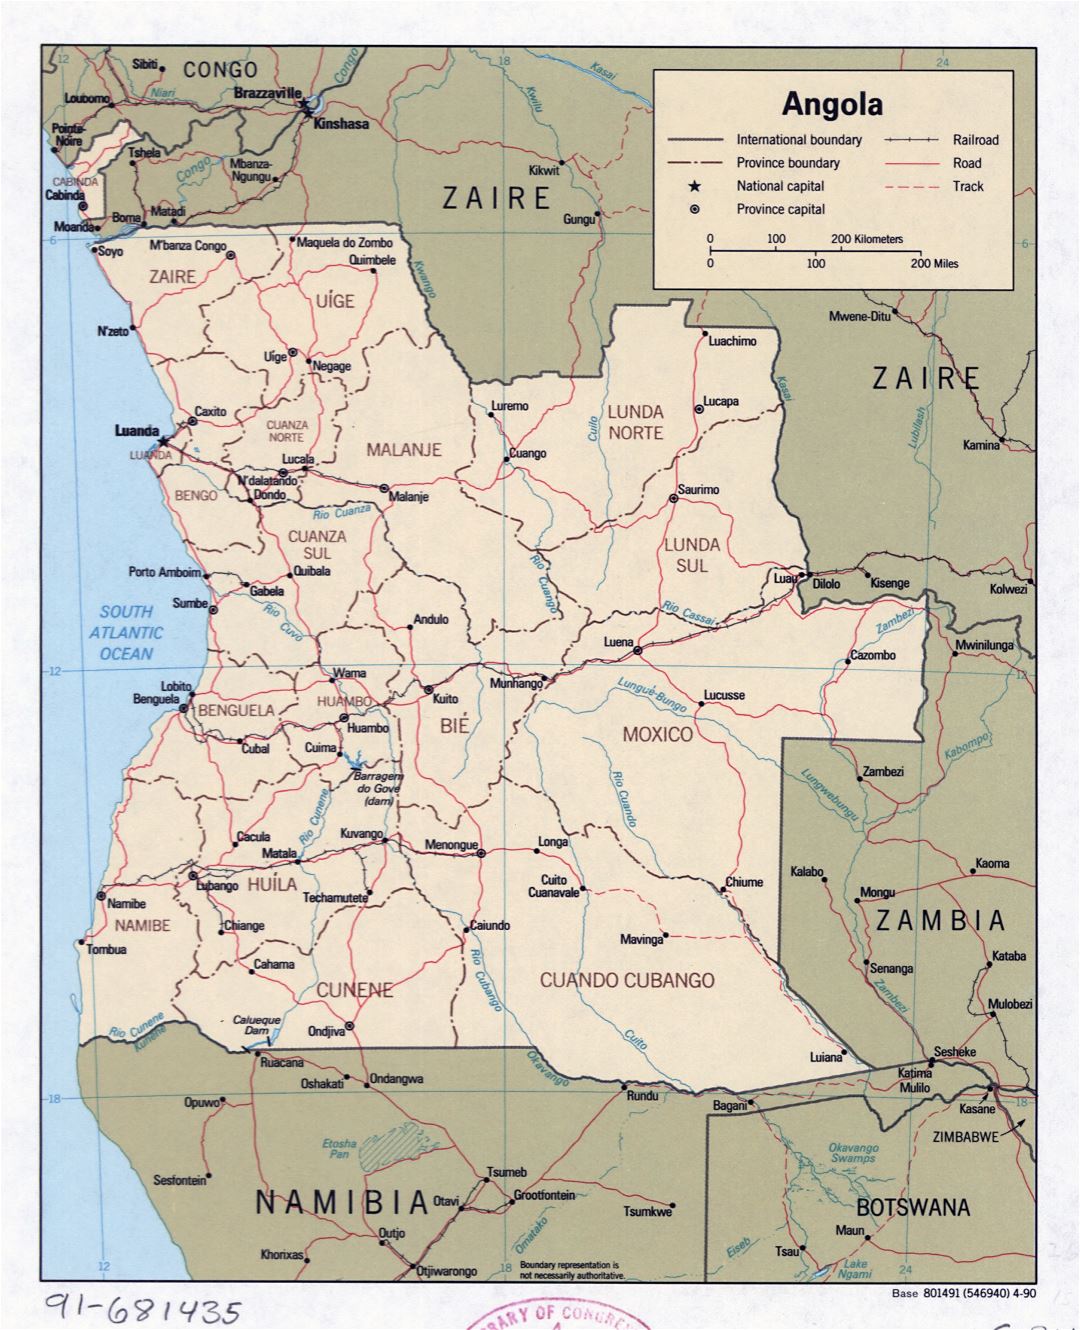 Grande detallado mapa político y administrativo de Angola con carreteras, ferrocarriles y principales ciudades - 1990